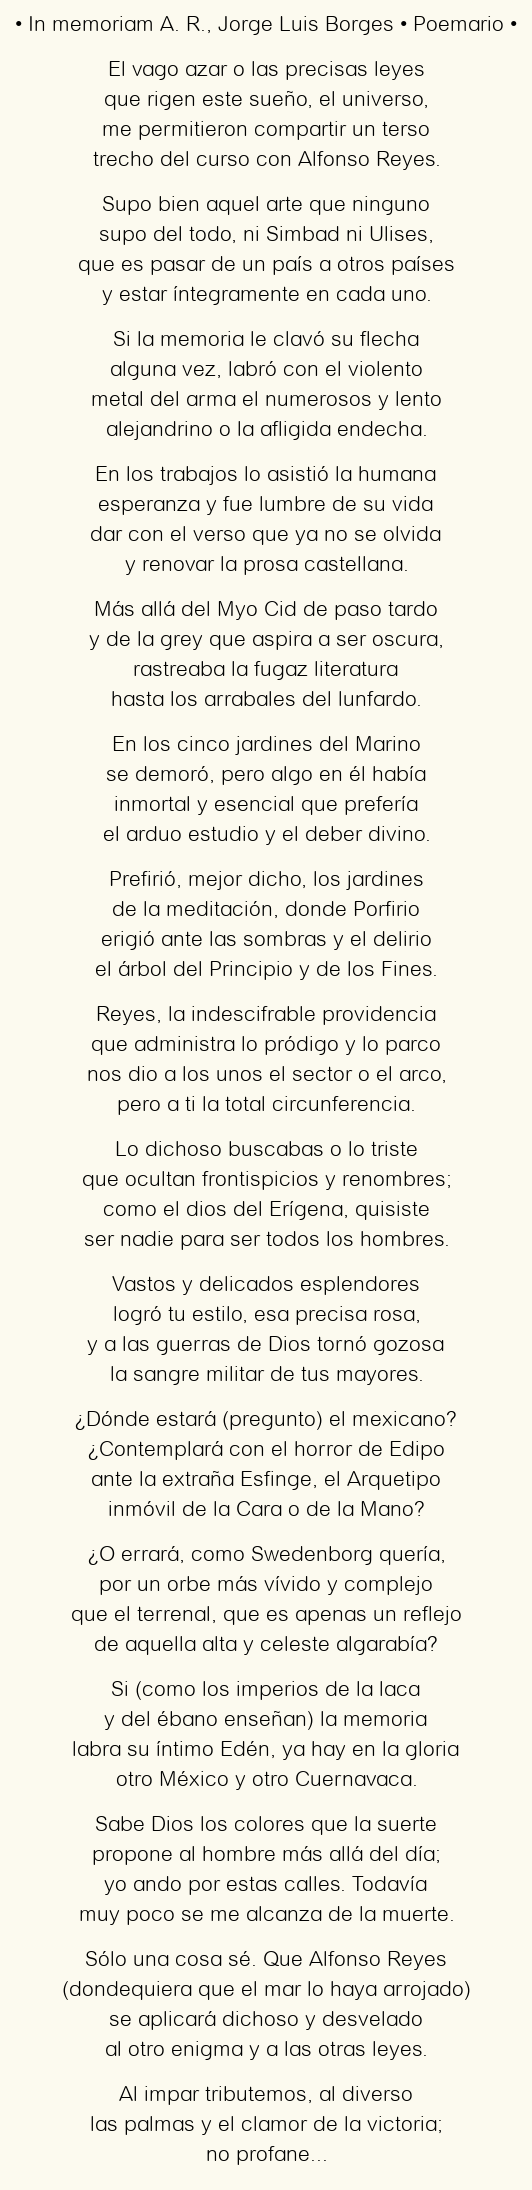 Imagen con el poema In memoriam A. R., por Jorge Luis Borges